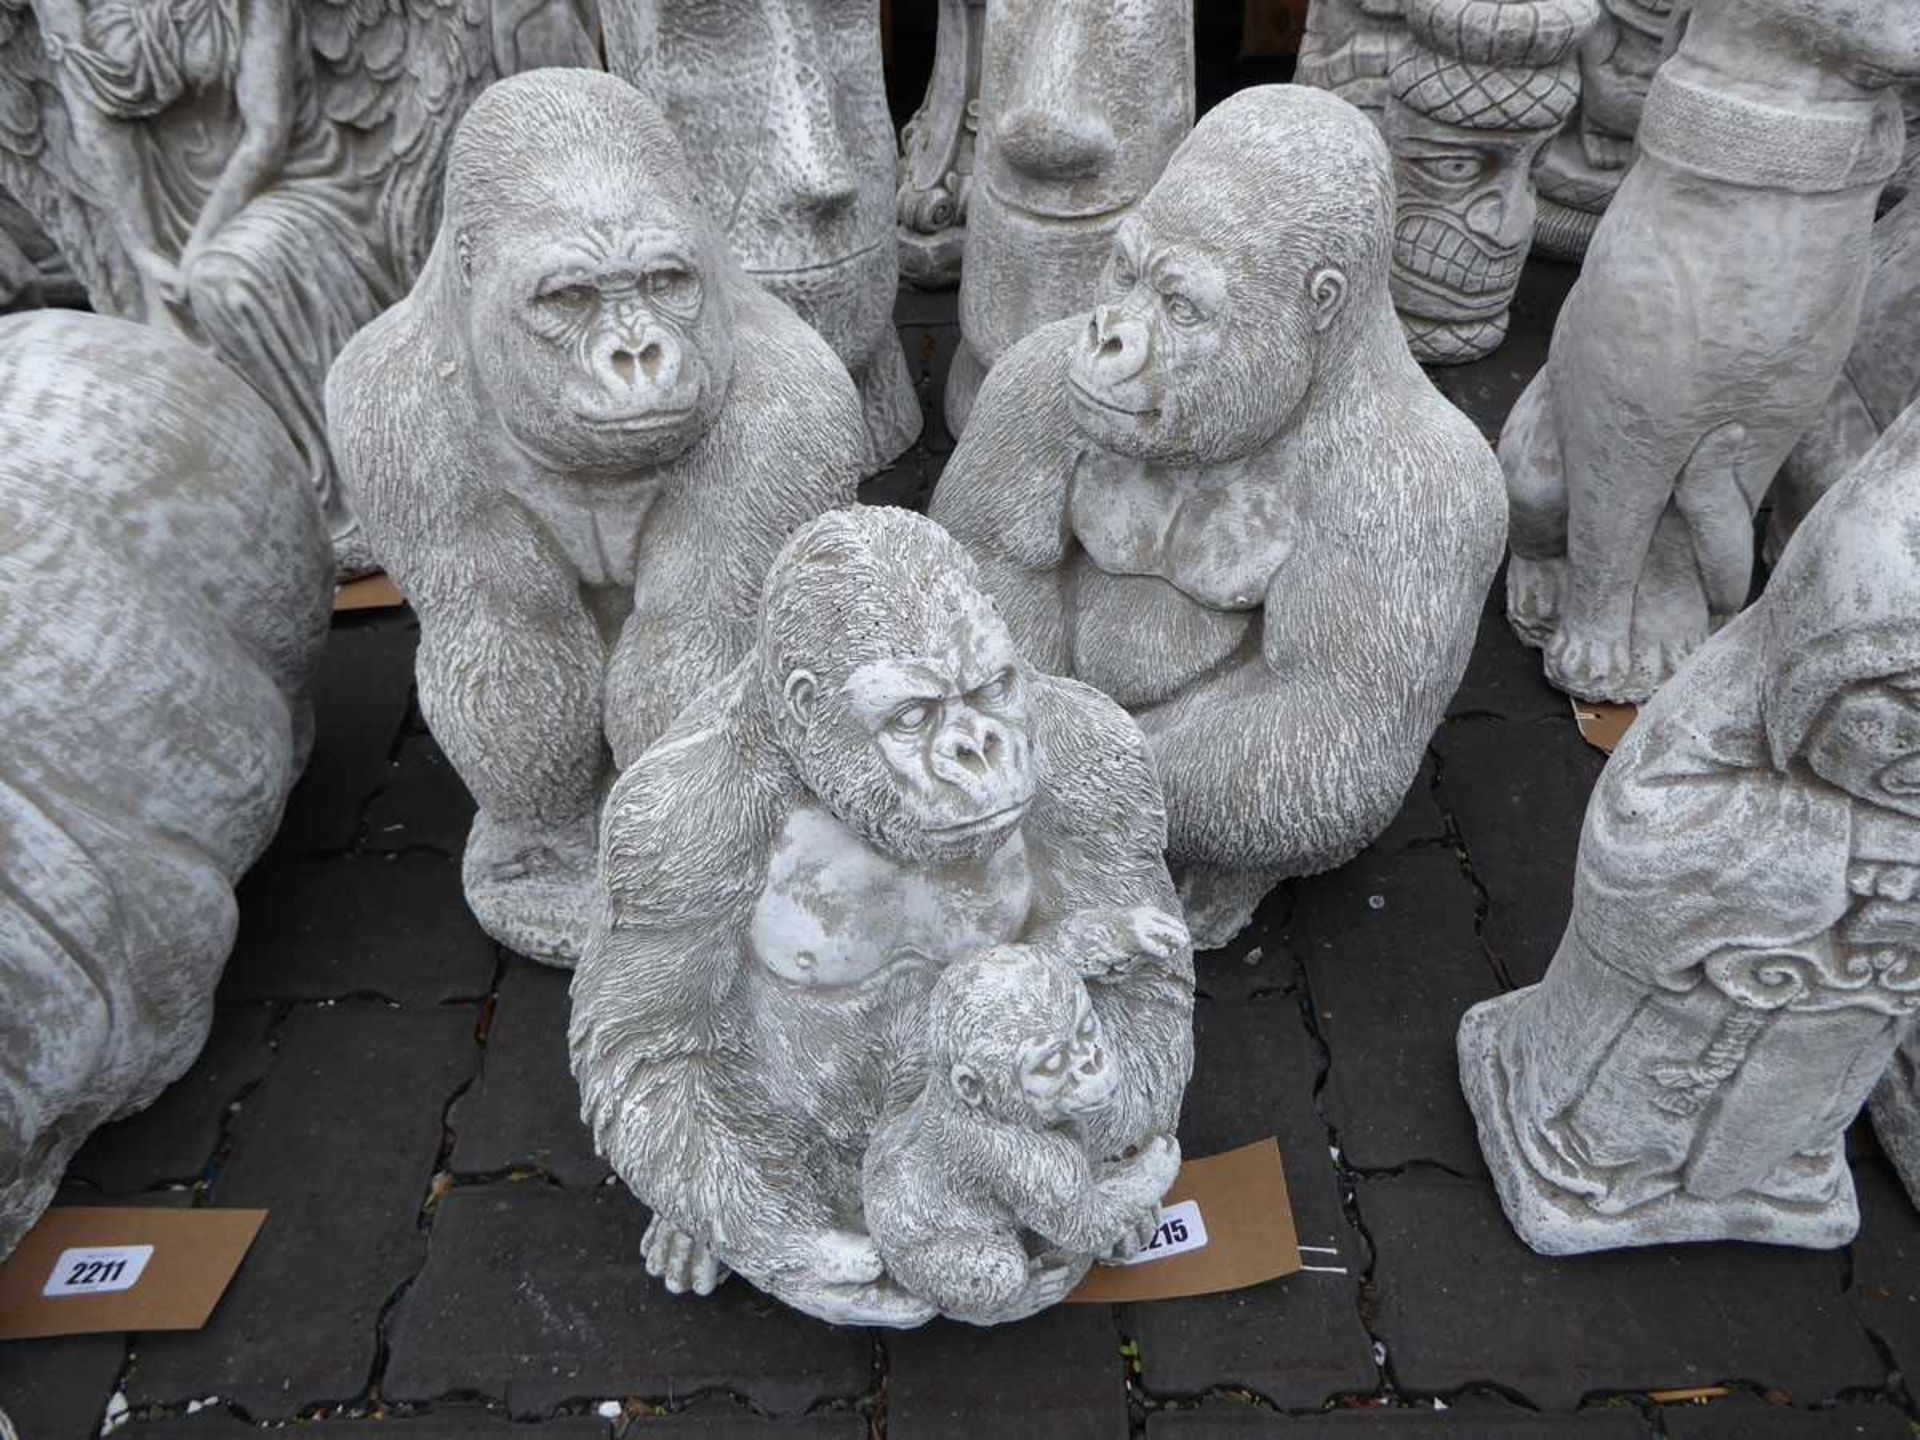 3 concrete ornaments of gorillas